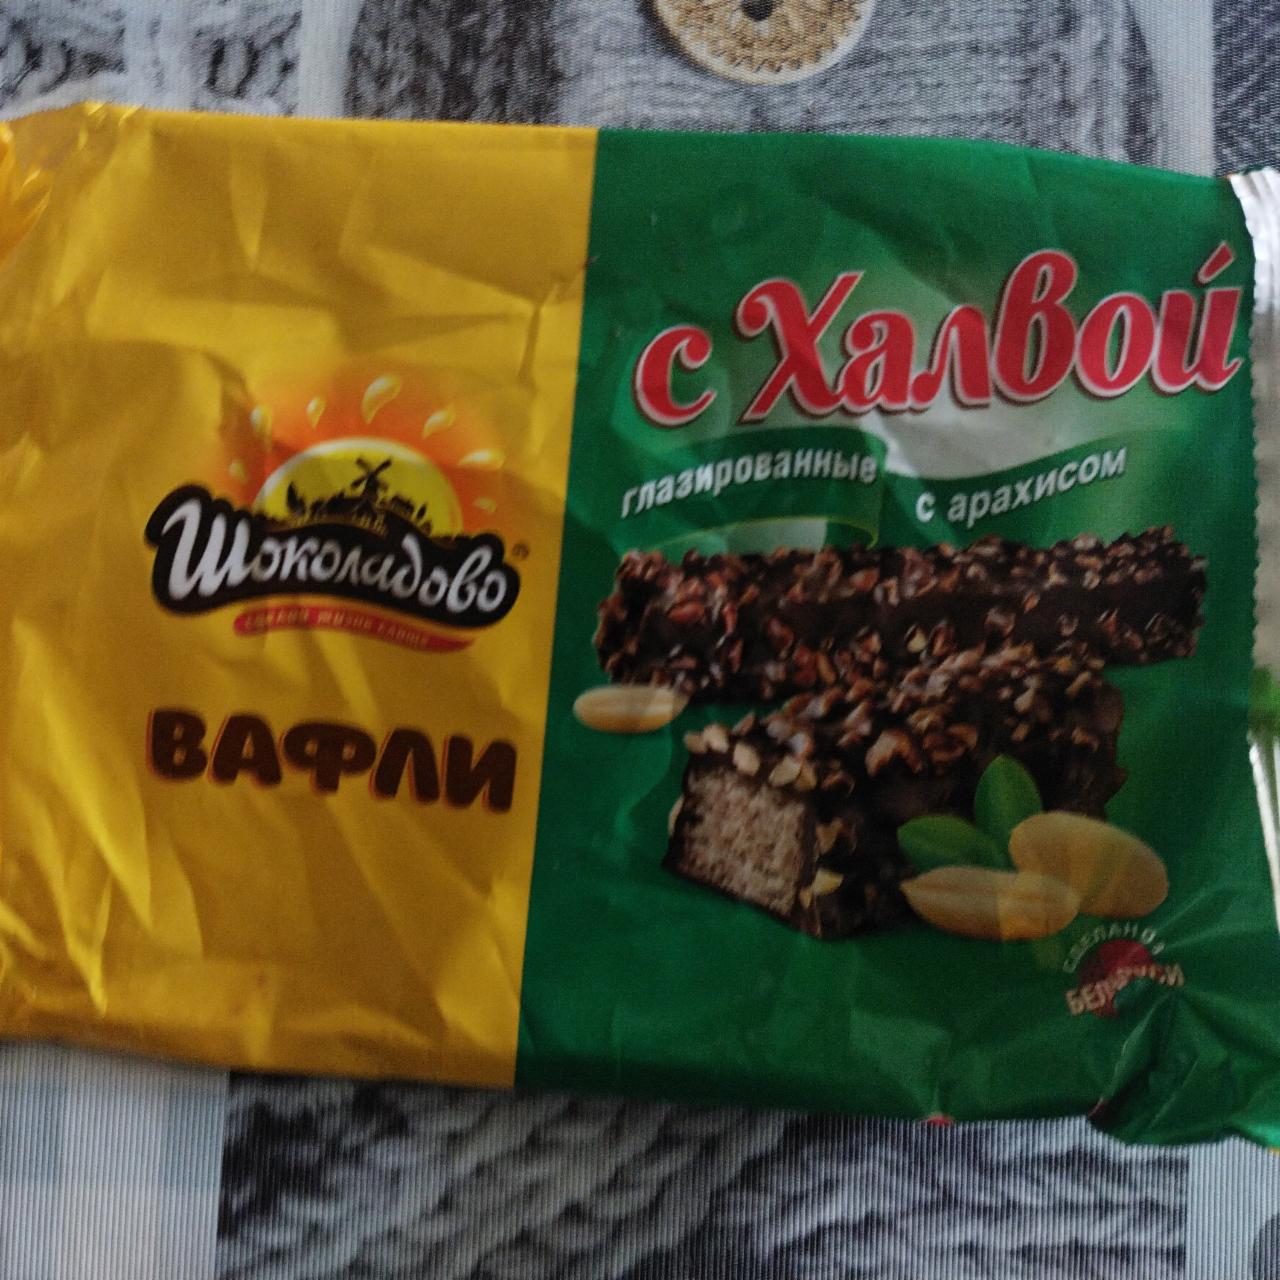 Фото - вафли с халвой глазированные темным шоколадом с арахисом Шоколадово